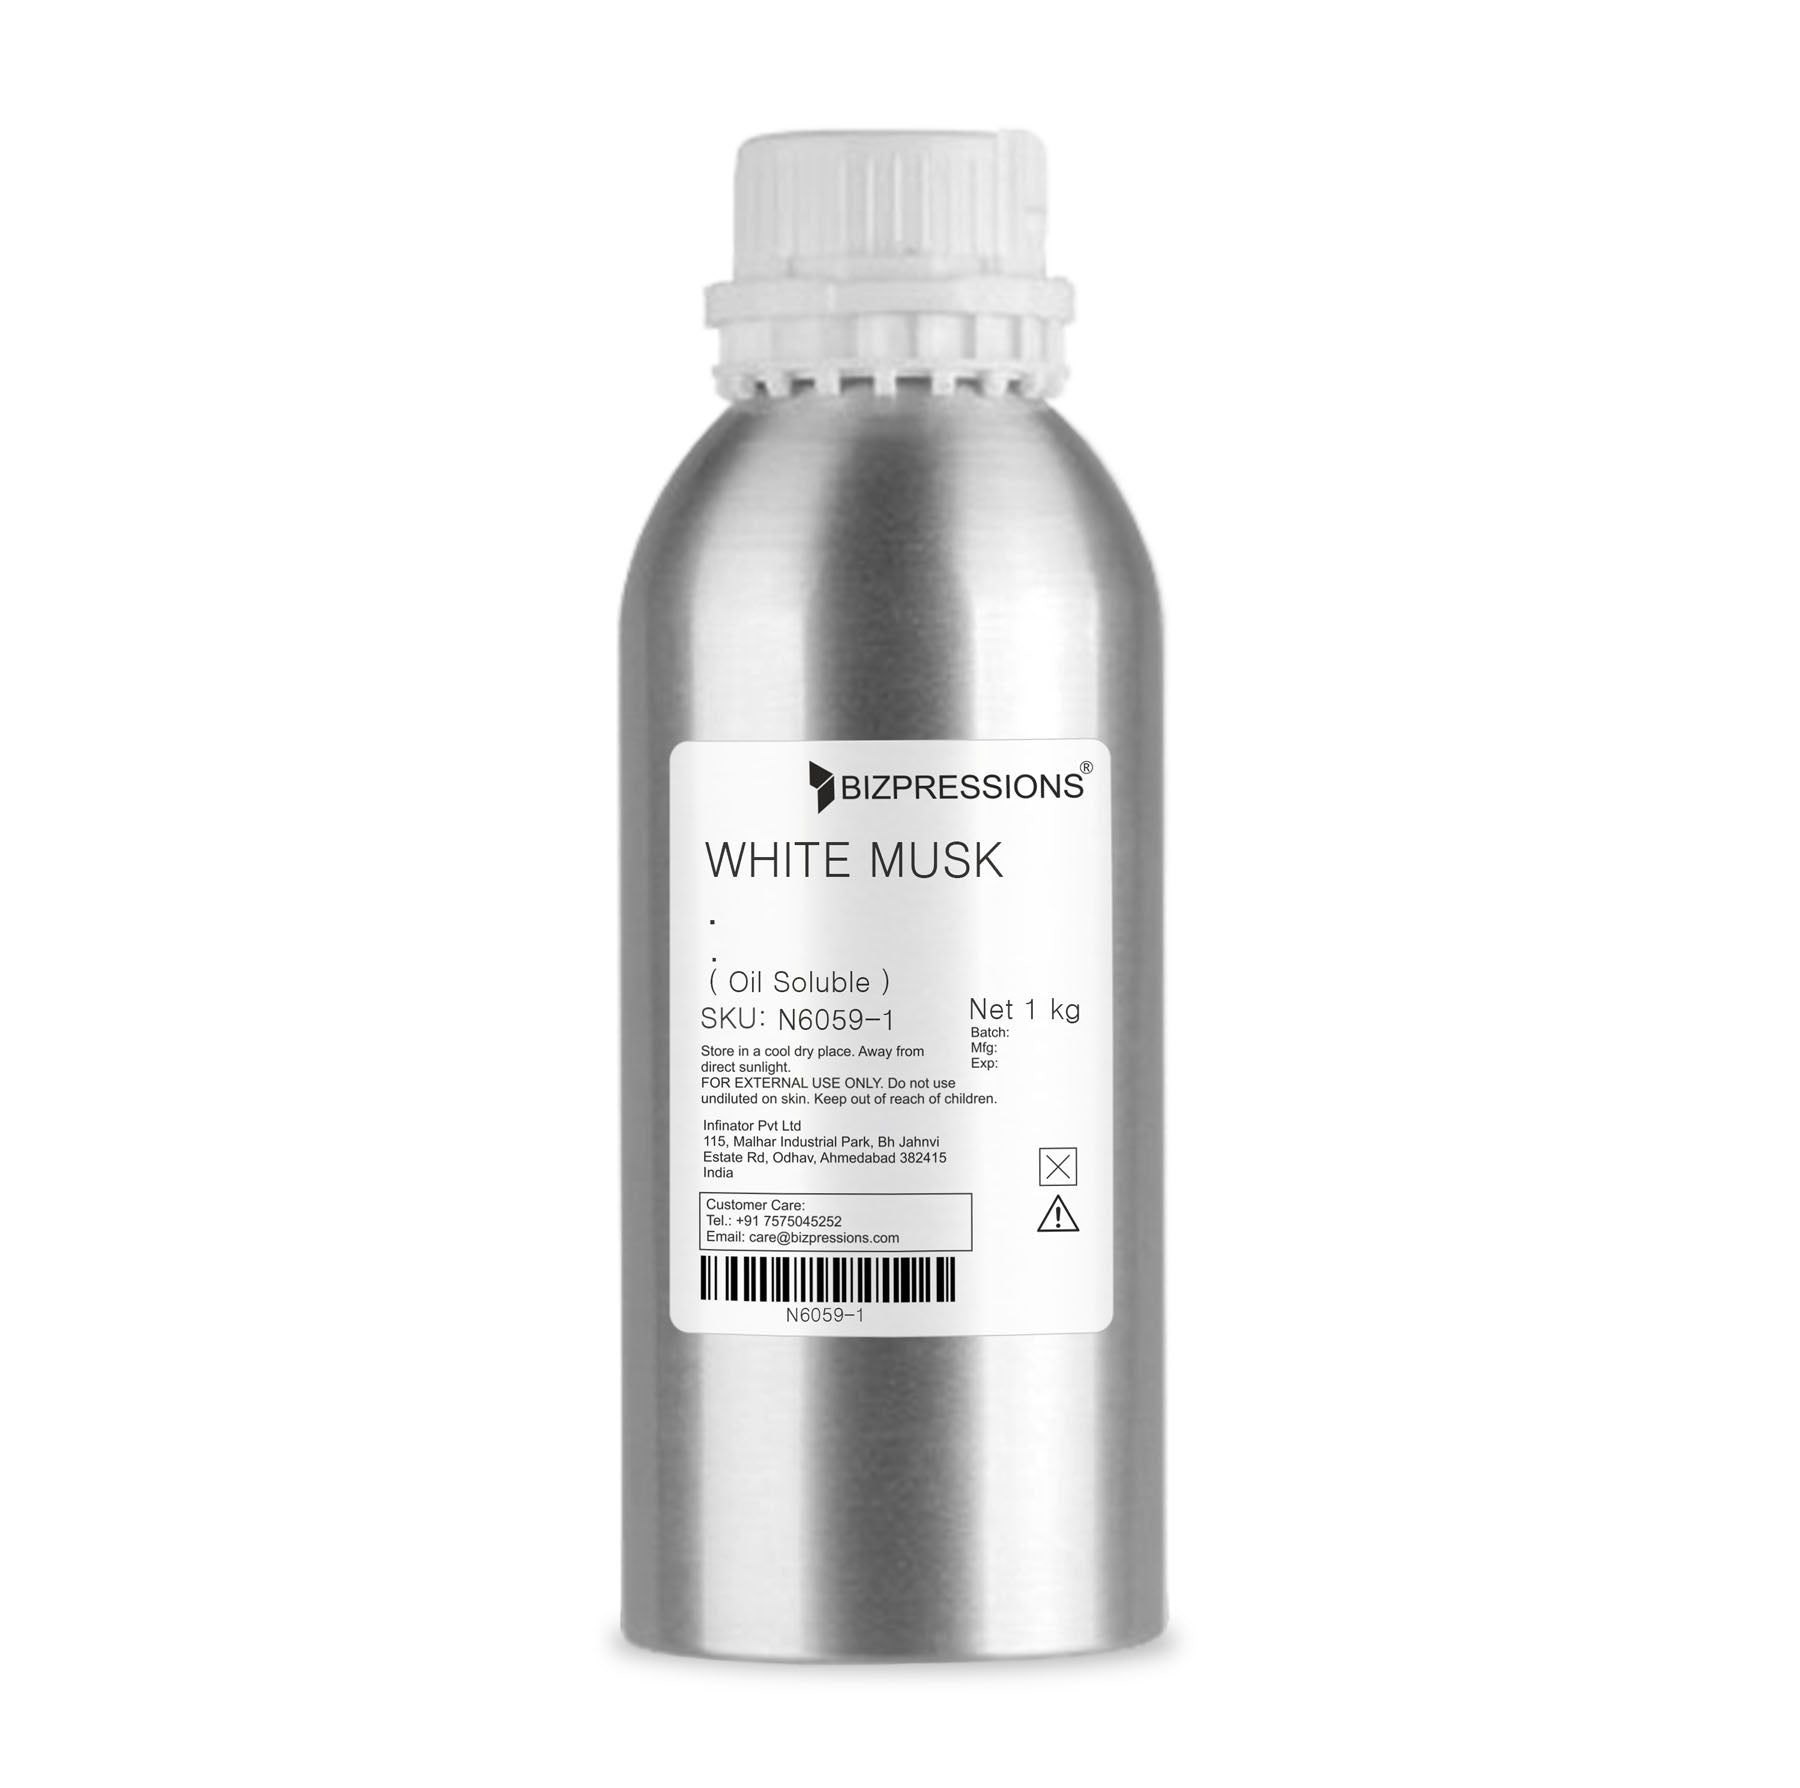 WHITE MUSK - Fragrance ( Oil Soluble ) - 1 kg